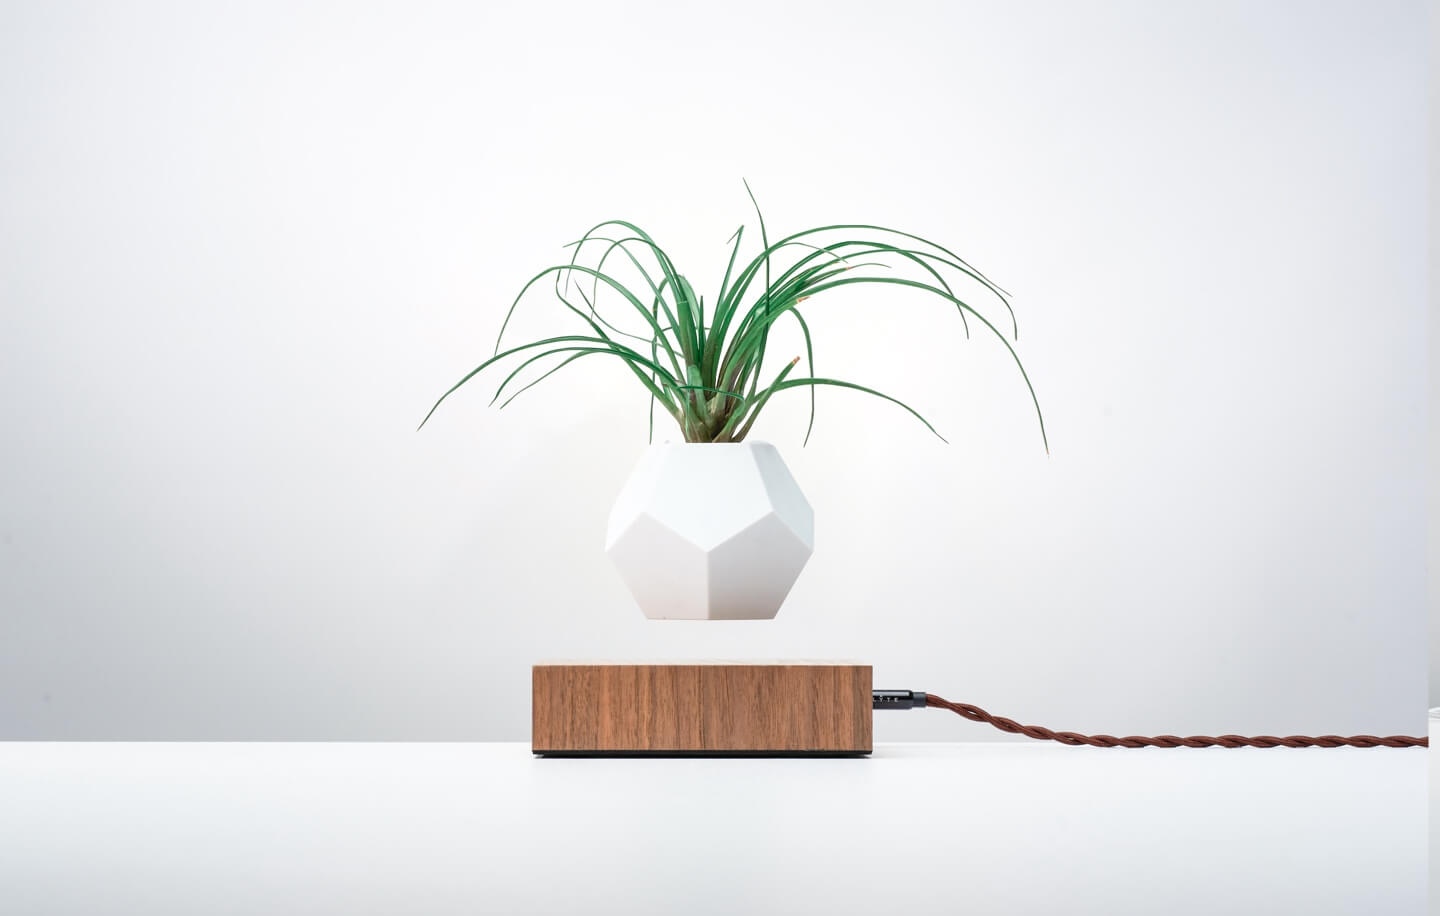 Lyfe levitating planter, oak base on a light background